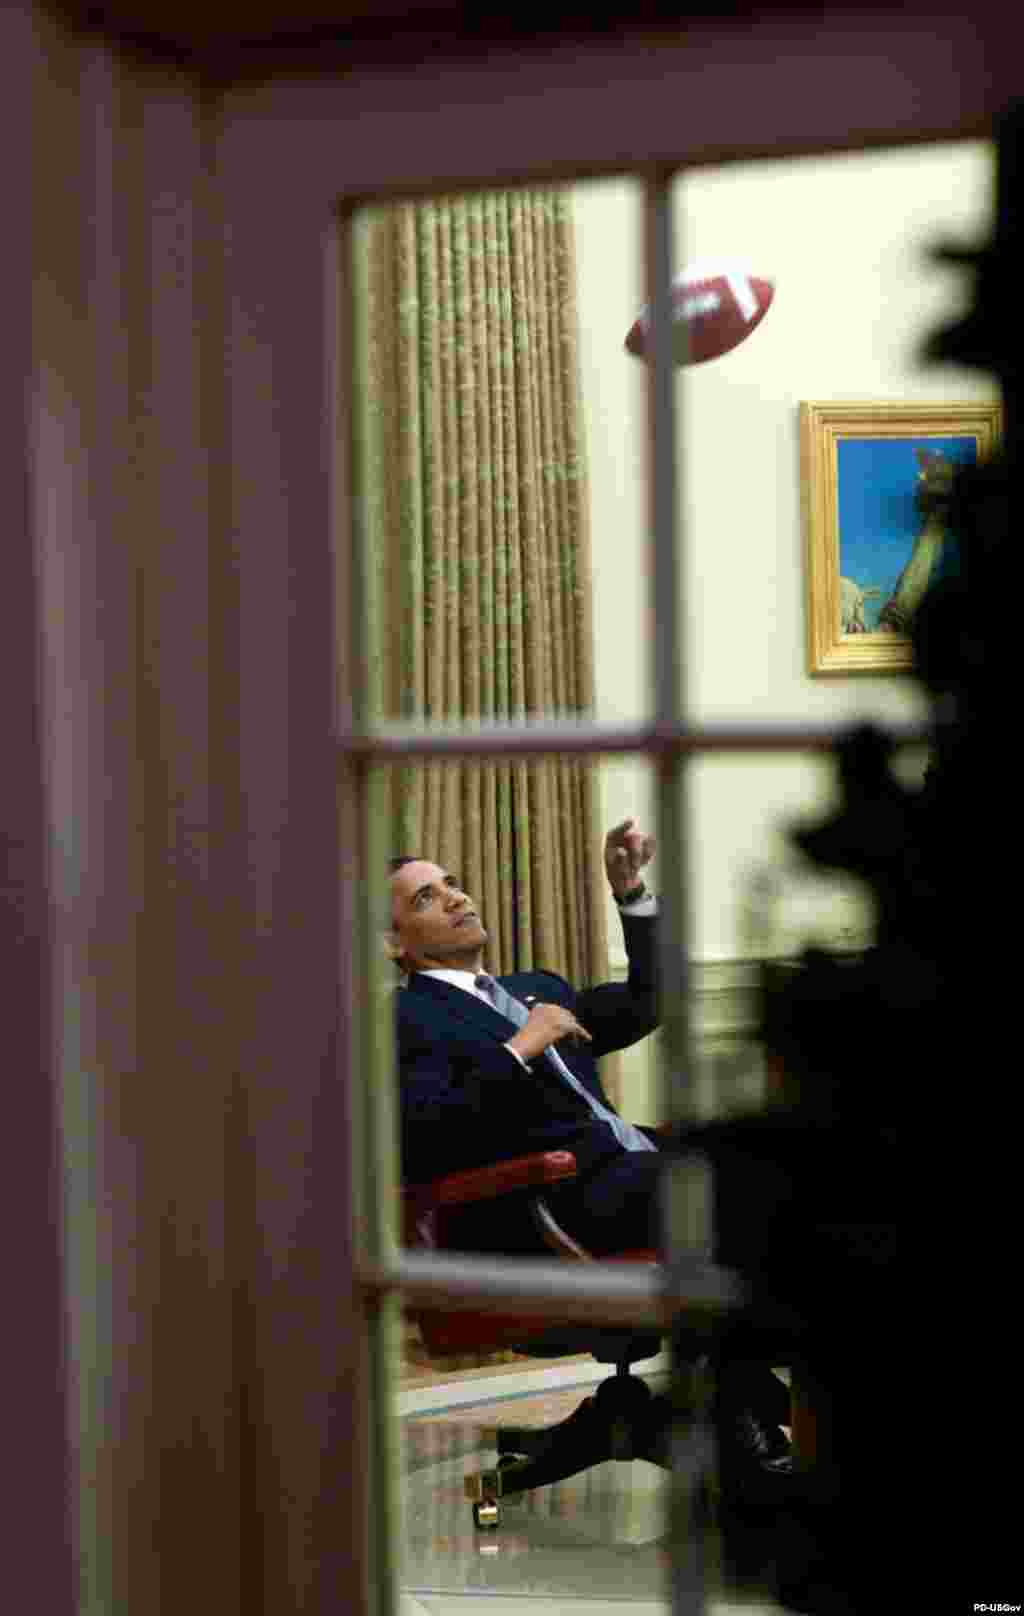 Фото и комментарии к ним принадлежат официальному фотографу Белого дома Питу Соуза (Pete Souza) - Барак Обама перебрасывается мячом с одним из своих помощников перед важным прием в Овальном кабинете (23 апреля 2009 года)